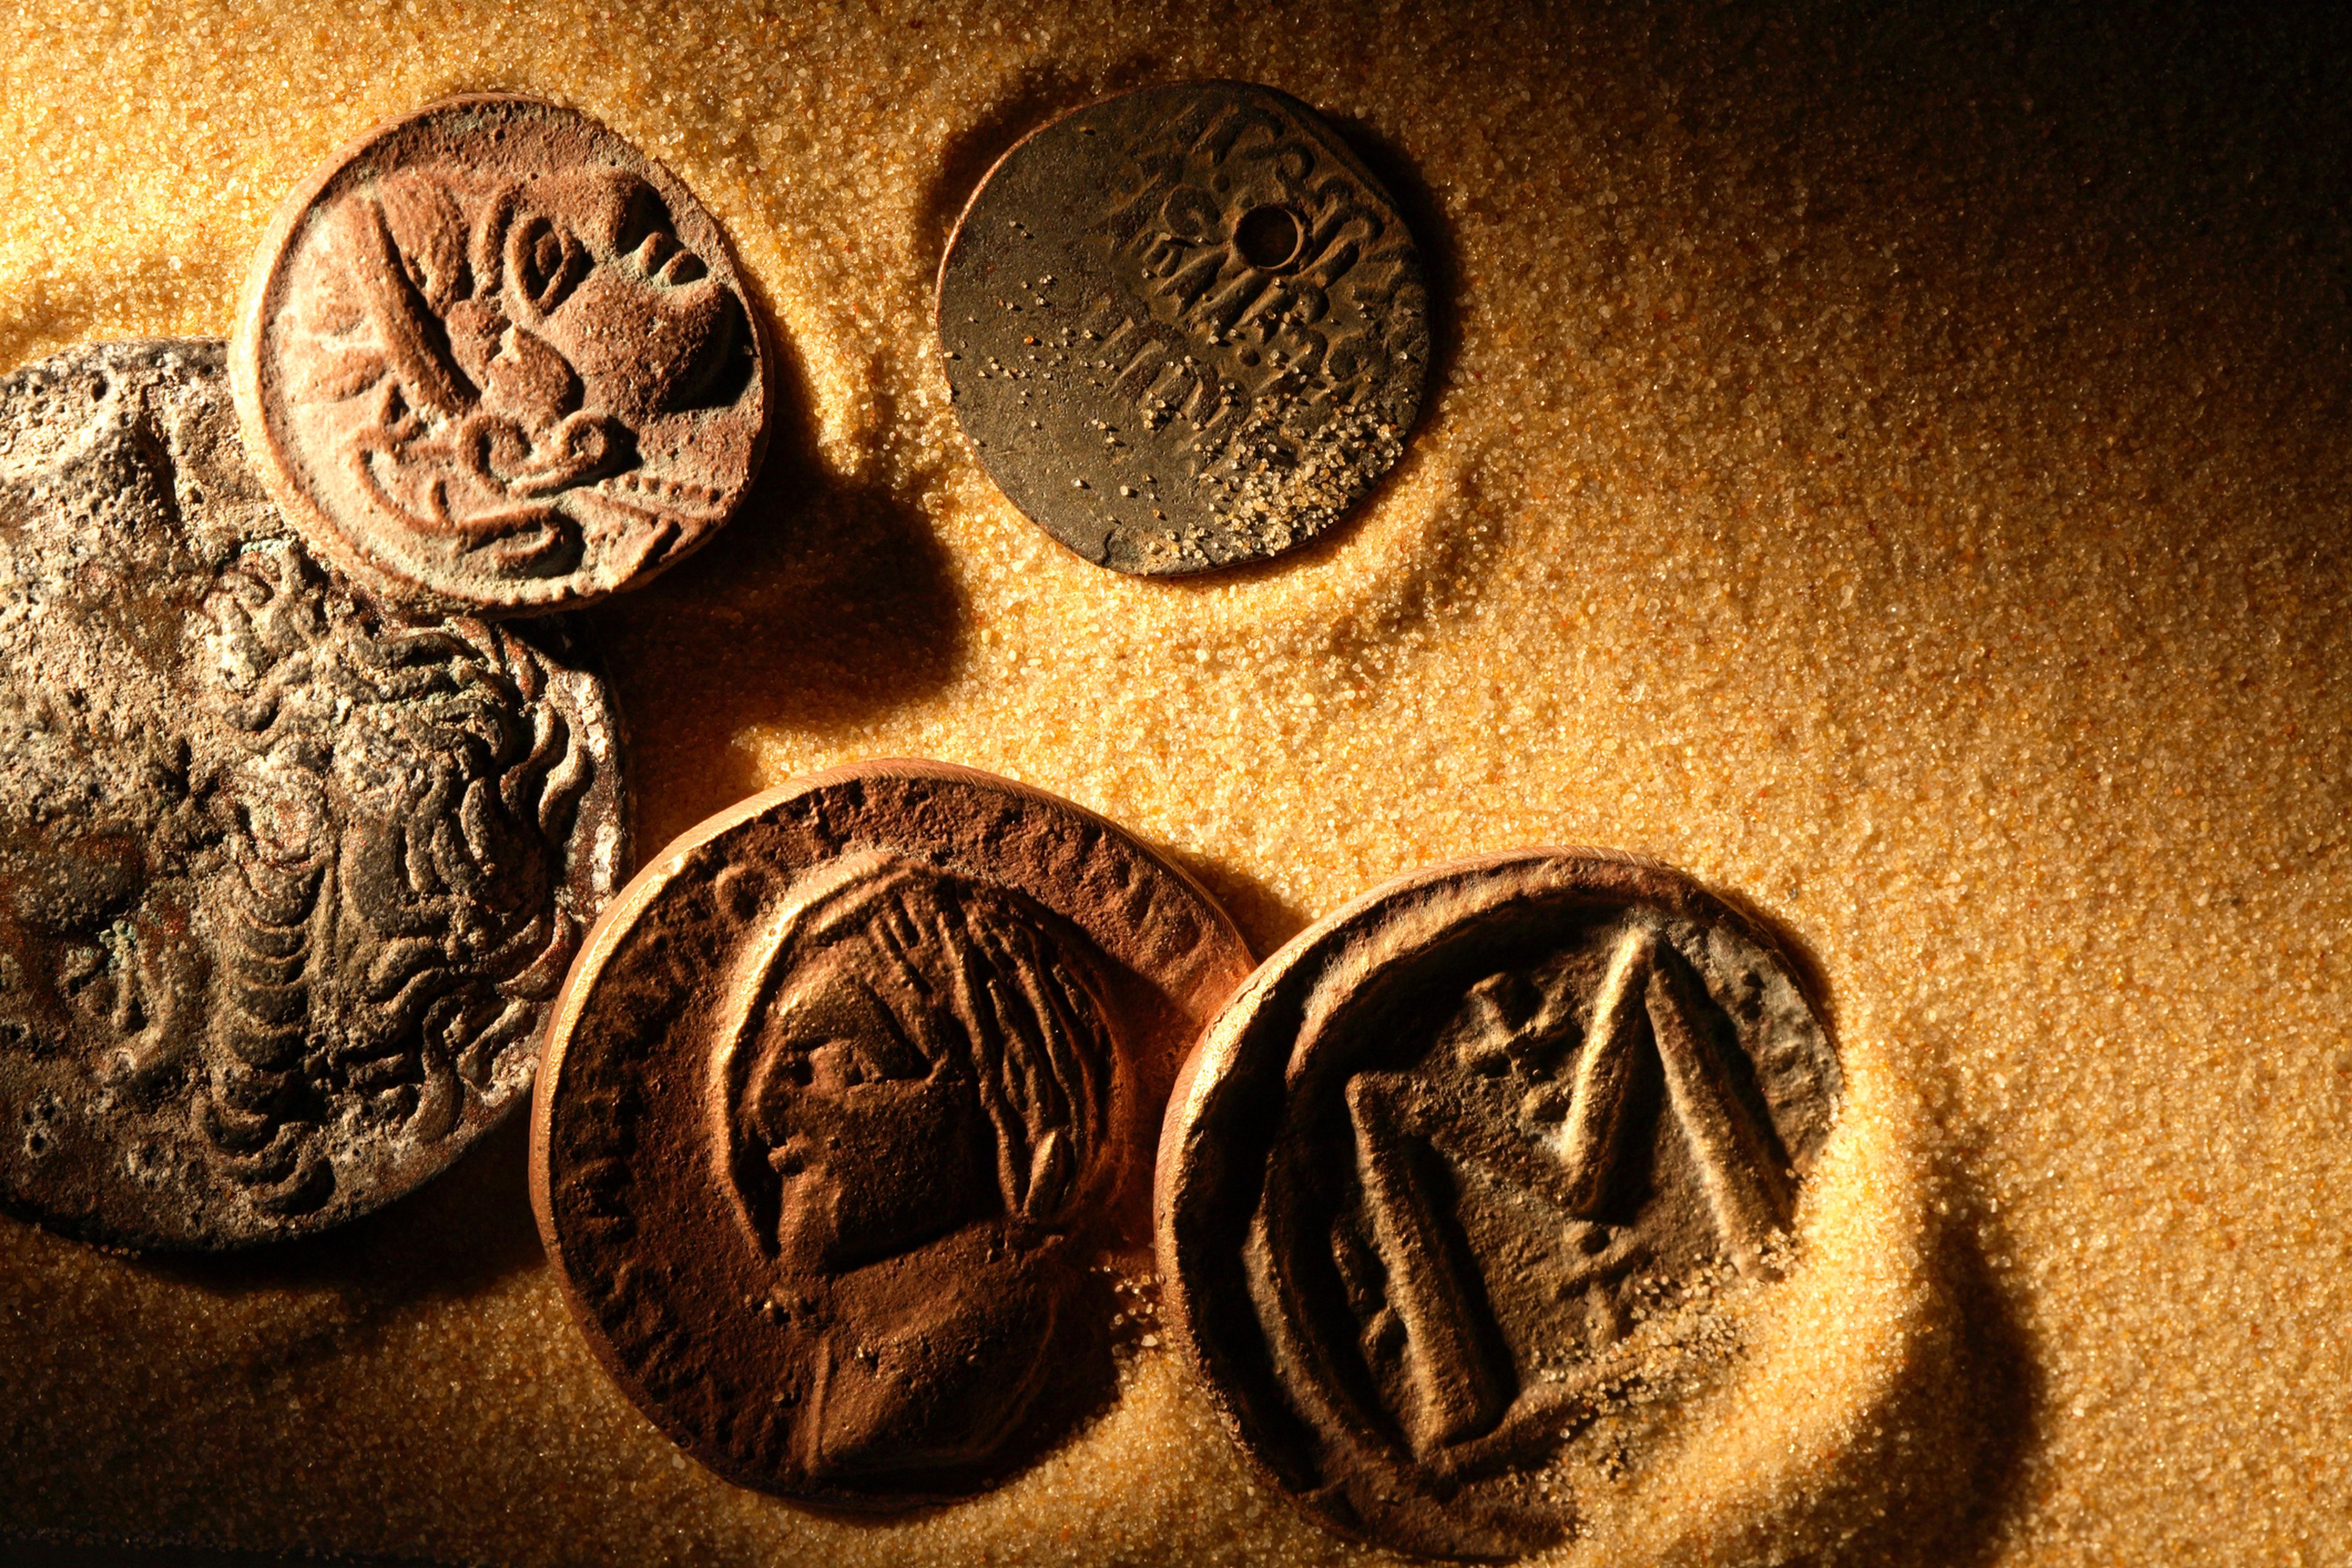 monedas antiguas